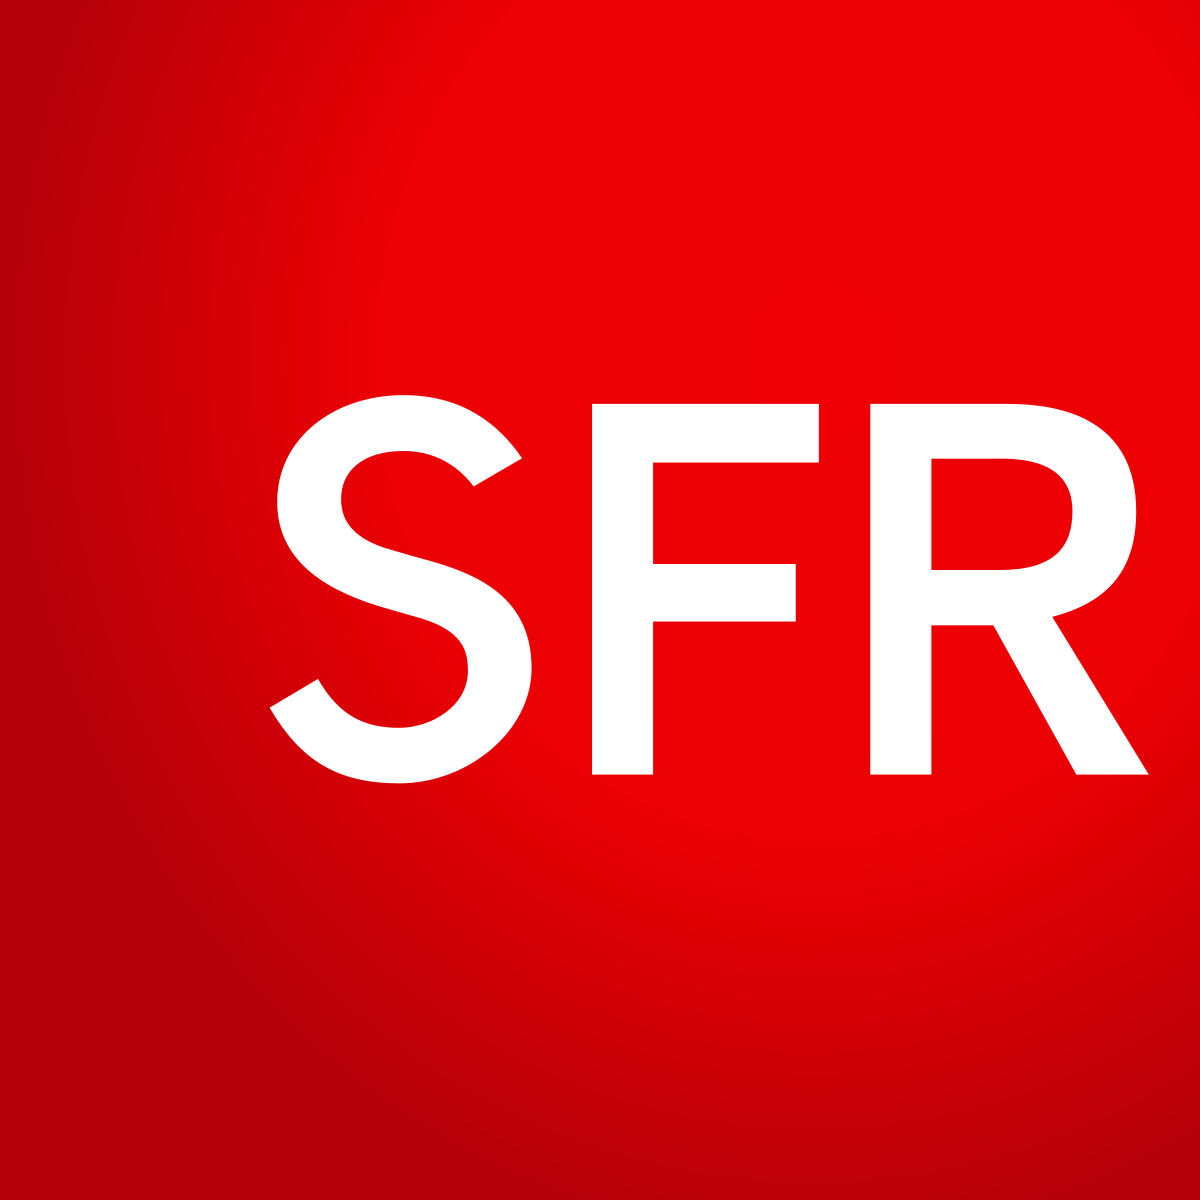 Souhaitez-vous contacter SFR pour une réclamation ?
